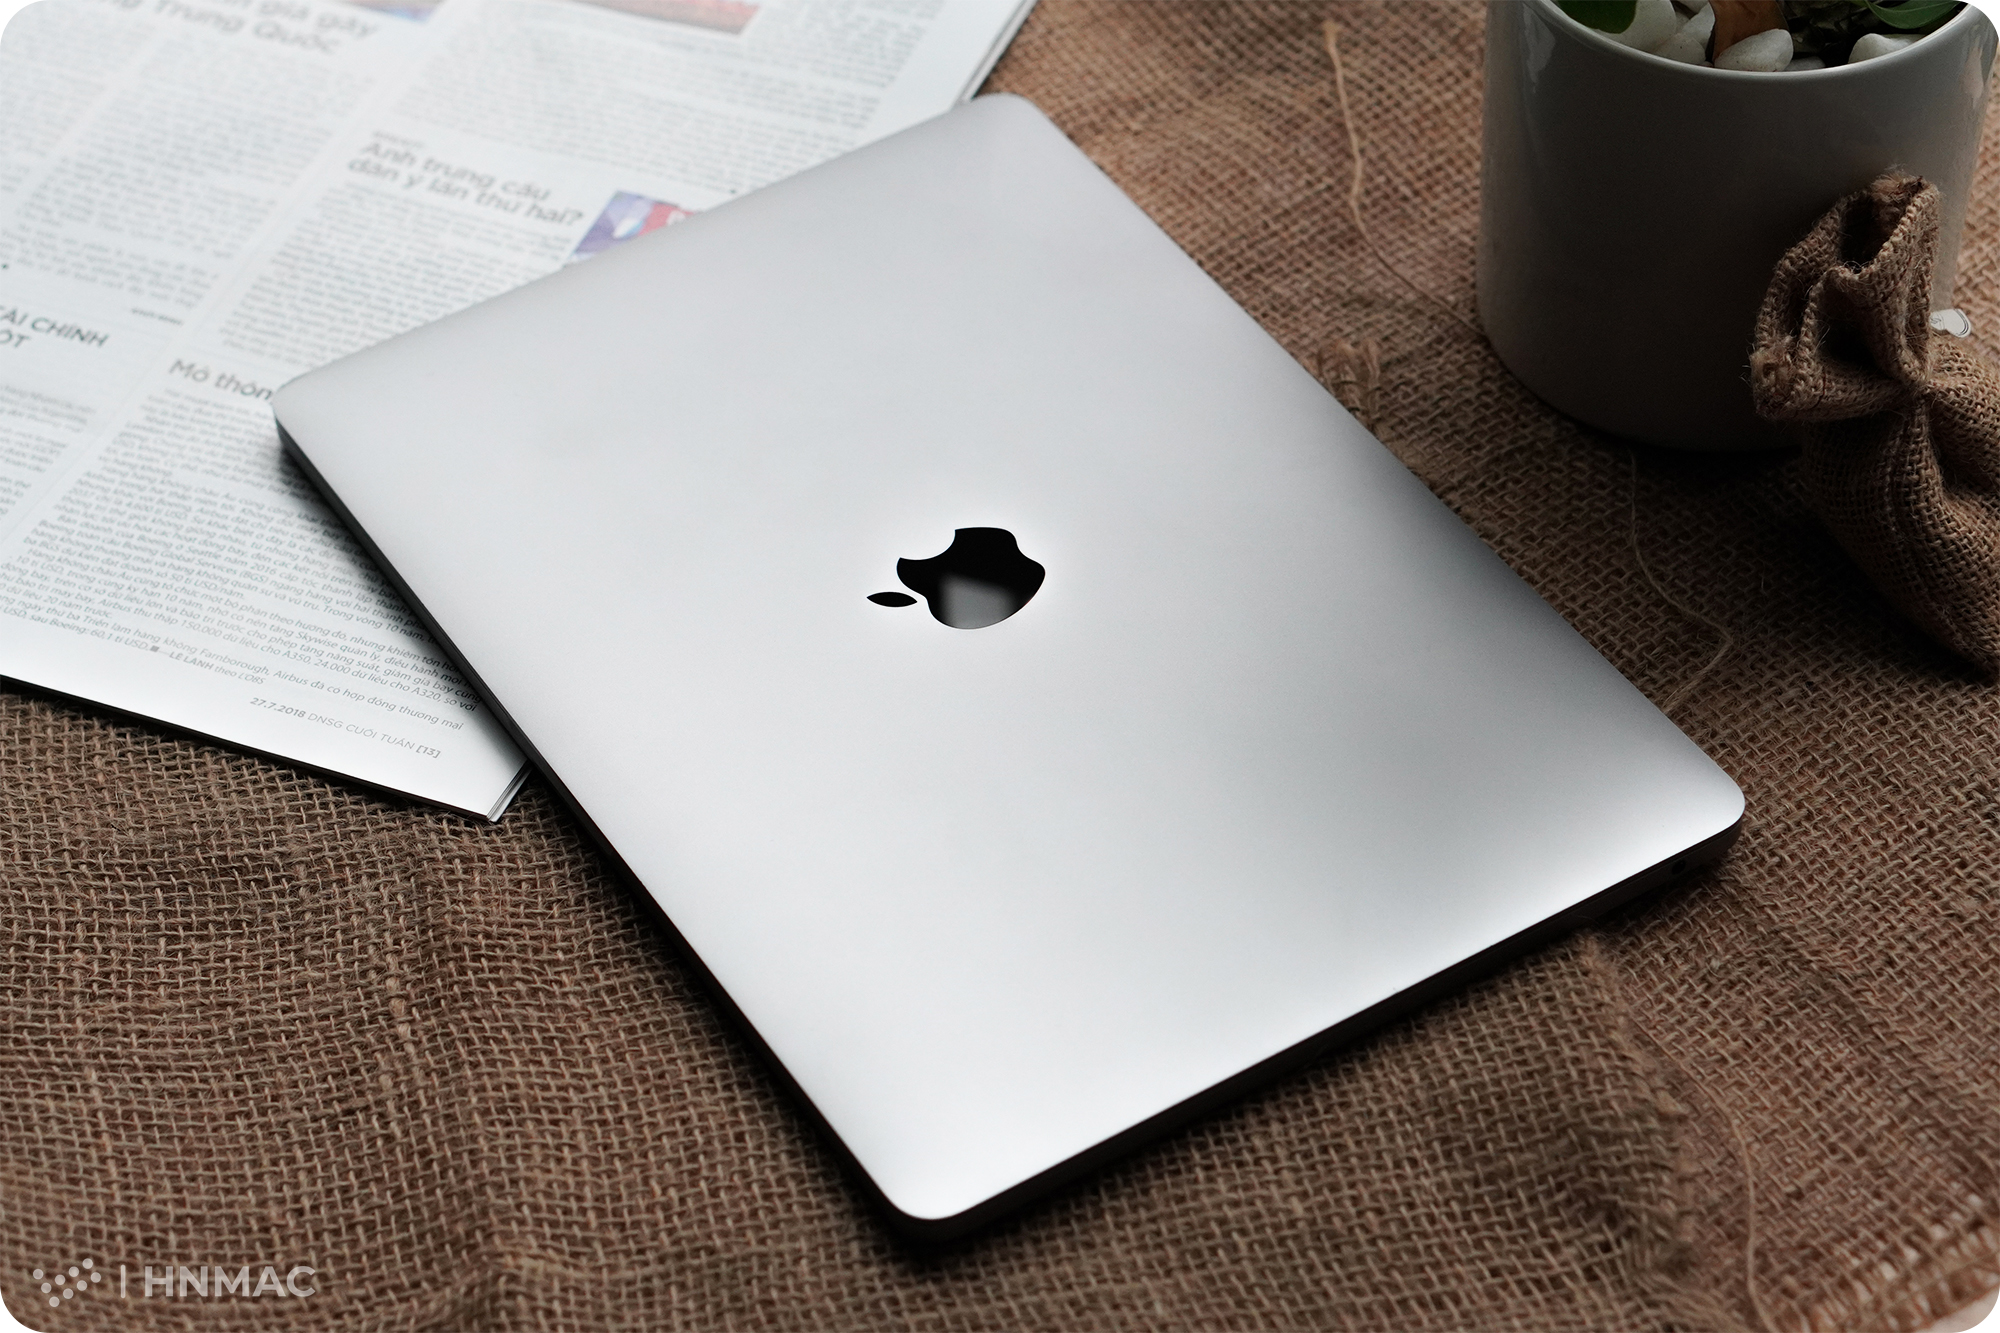 Đánh giá MacBook Pro 13 inch 2017 liệu còn đáng mua trong thời điểm hi